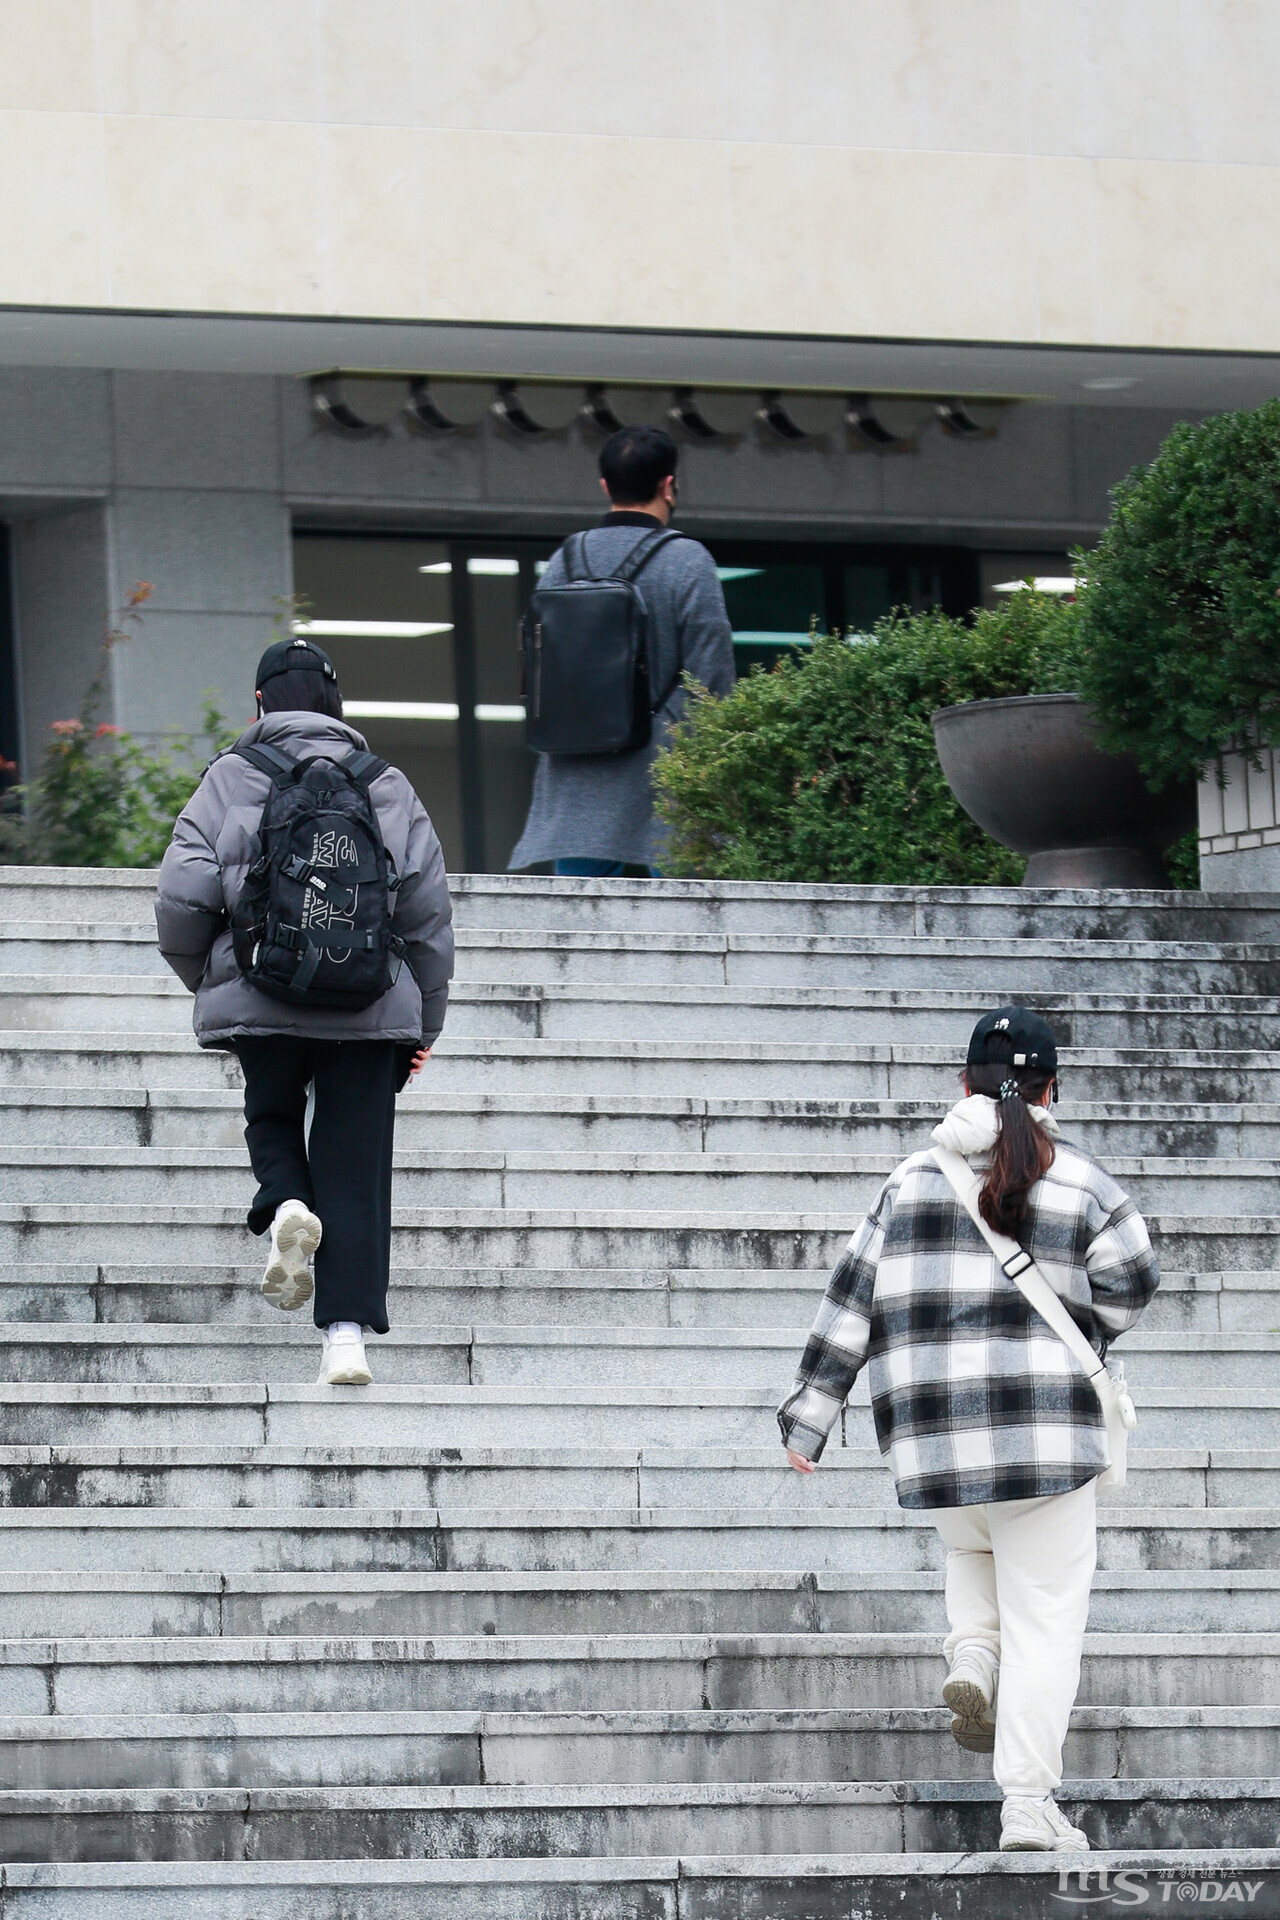 19일 강원대학교 춘천캠퍼스에서 학생들이 두꺼운 옷을 입고 발걸음을 옮기고 있다. 기상청에 따르면 이달 말까지 평년보다 기온이 낮을 것으로 전망된다.